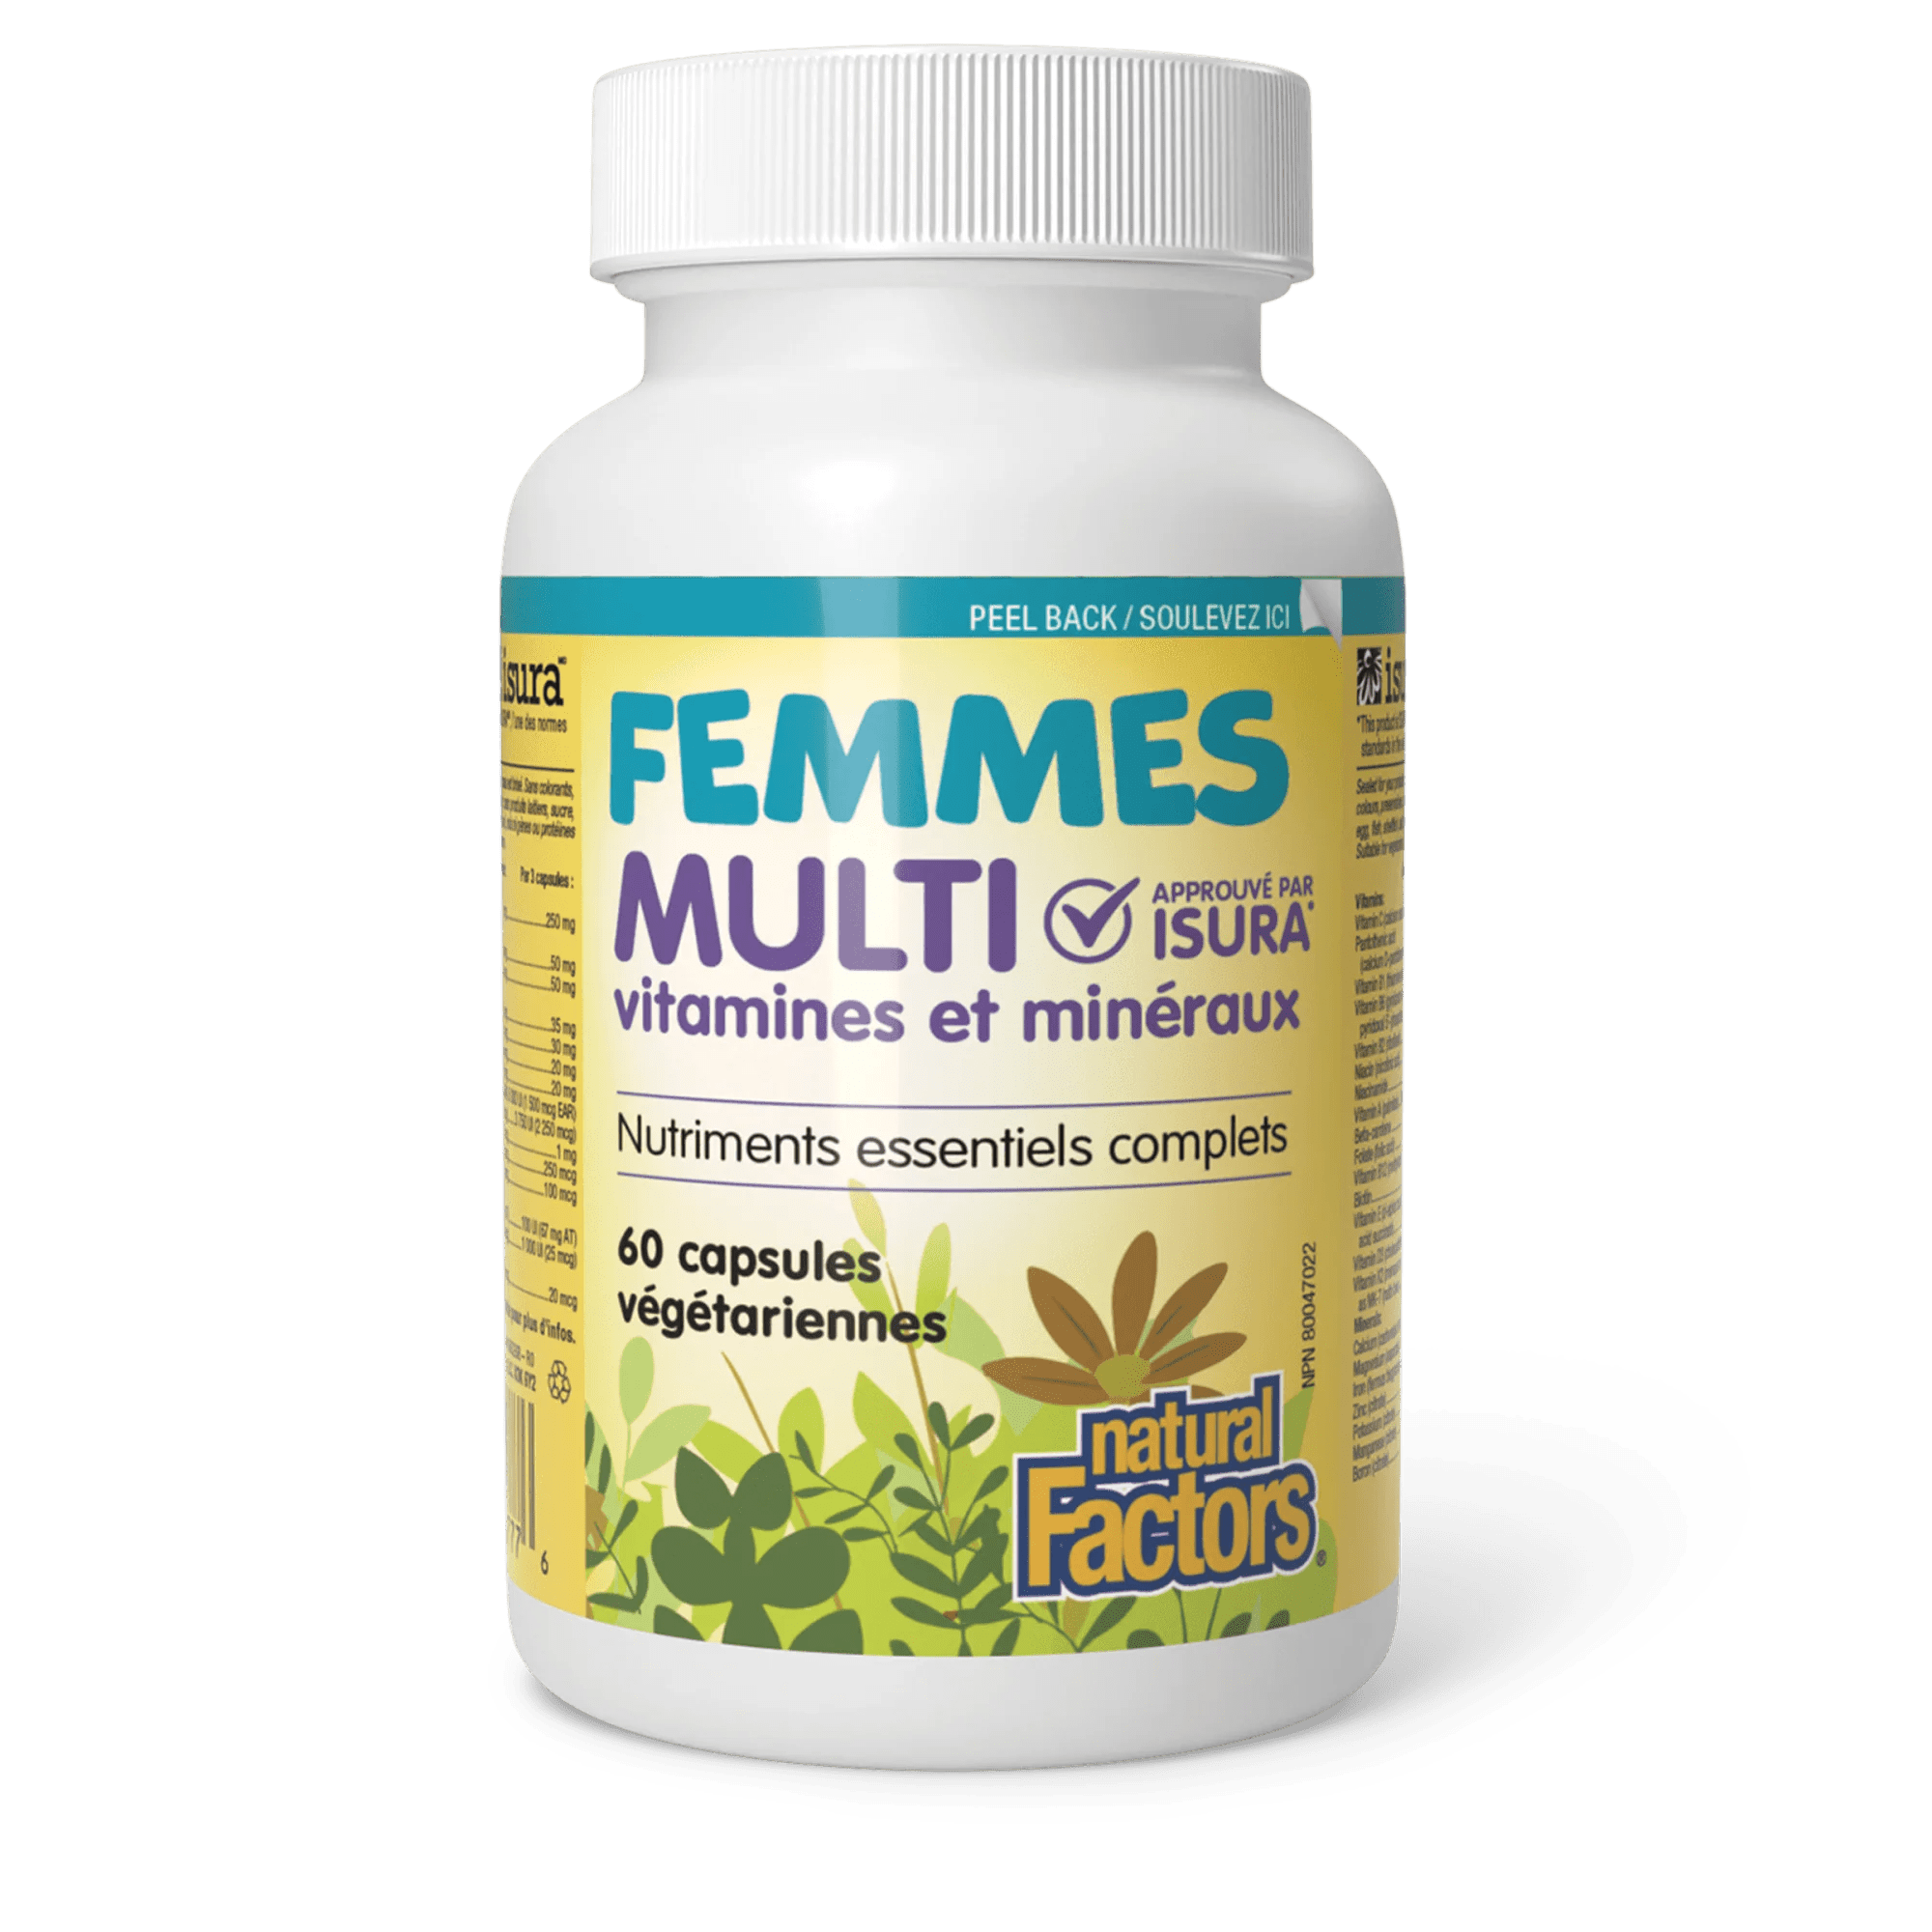 NATURAL FACTORS Suppléments Multivitamines et minéraux femmes 60vcaps